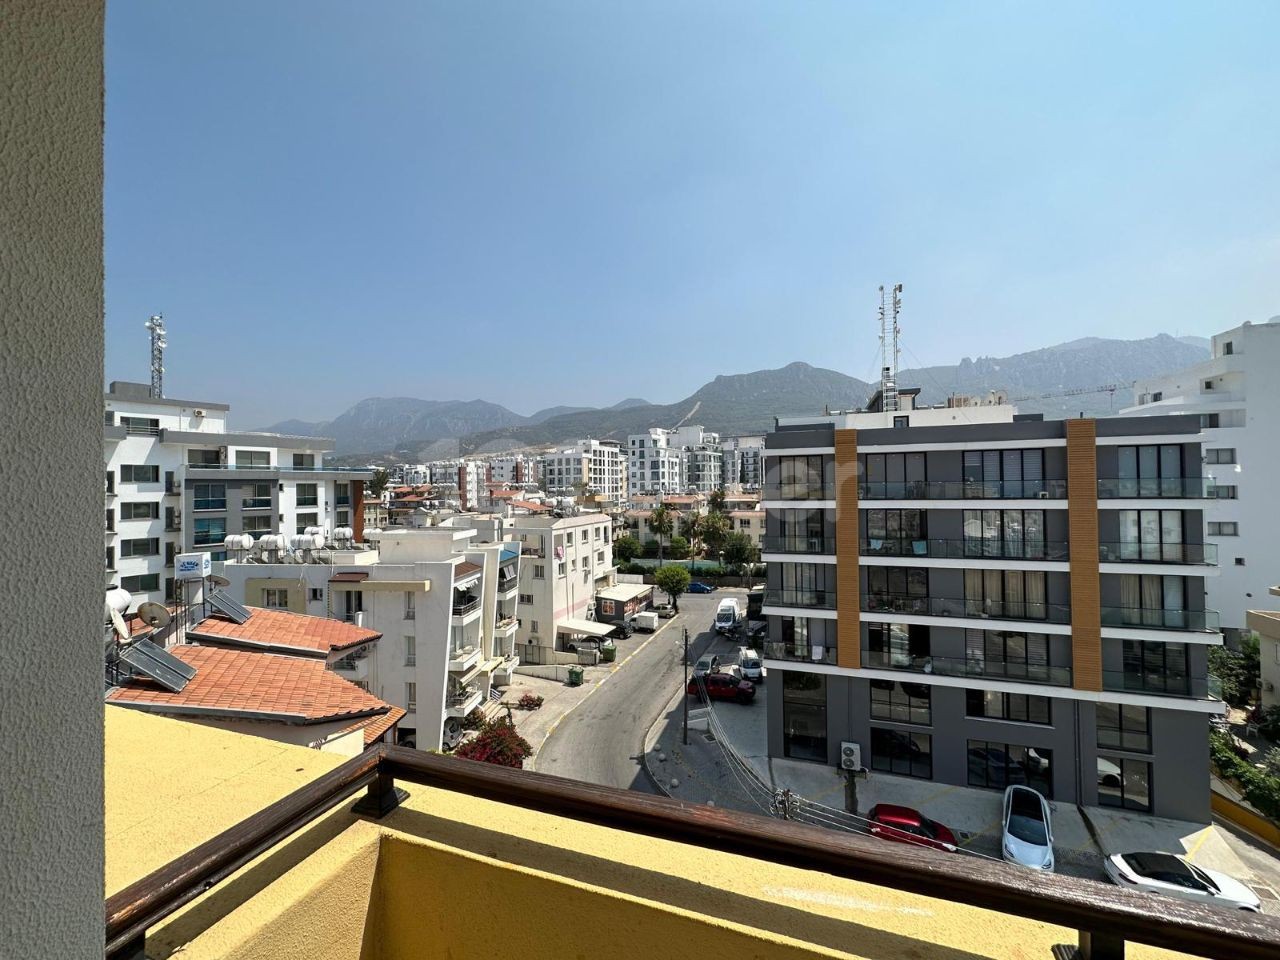 آپارتمان 2+1 کاملا مبله برای اجاره با چشم انداز کوه و دریا در نزدیکی بازار نصمار در مرکز گیرنه. صلح 05338376242